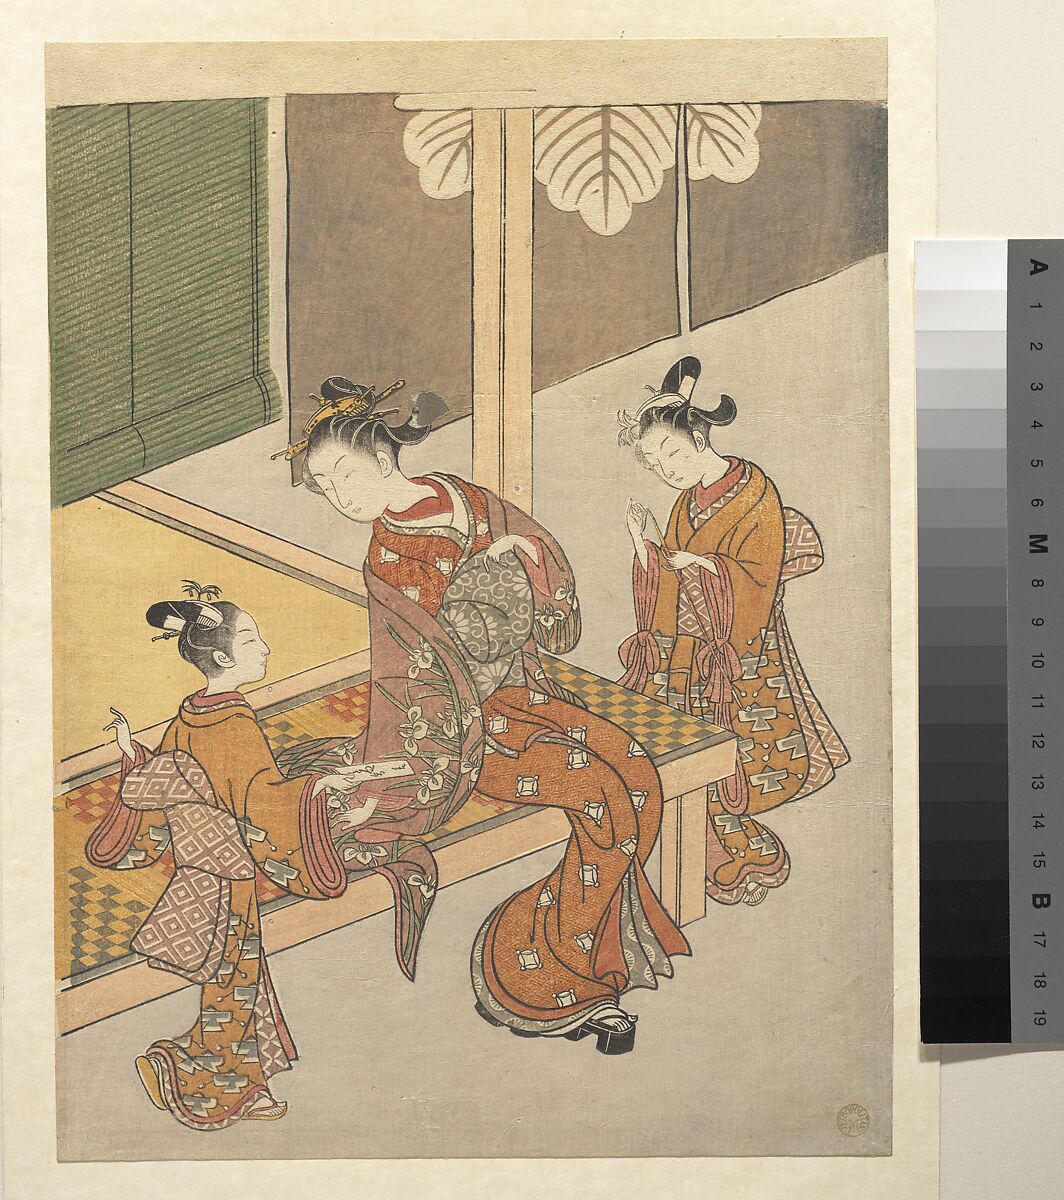 On the Engawa of Tsuta-ya, Suzuki Harunobu (Japanese, 1725–1770), Woodblock print; ink and color on paper, Japan 